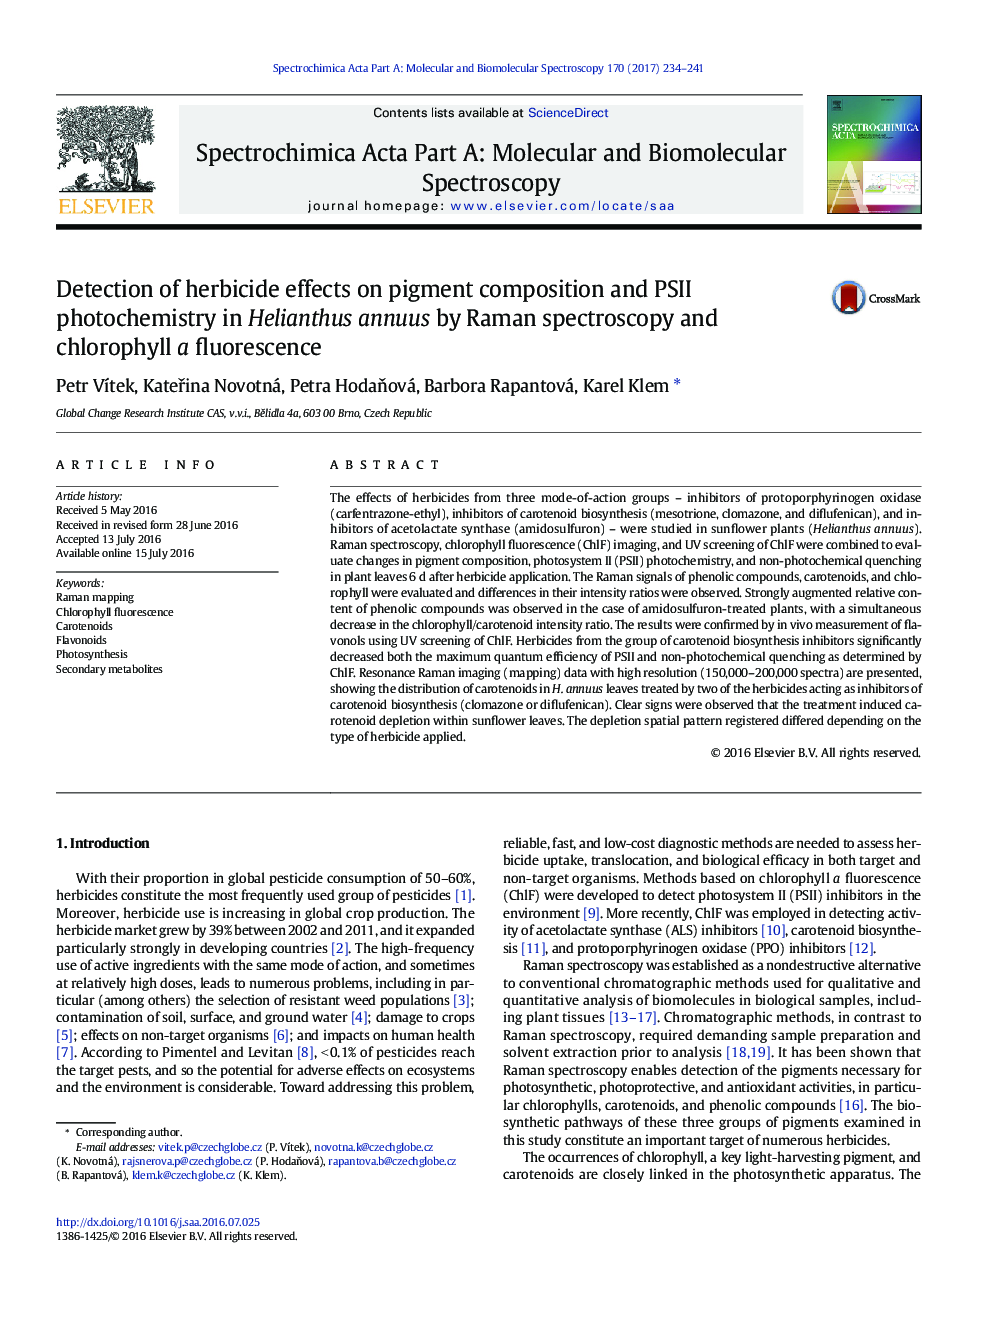 تشخیص اثرات علف کش بر ترکیب رنگدانه و فتوشیمی PSII در Helianthus annuus با طیف سنجی رامان و فلورسانس کلروفیل